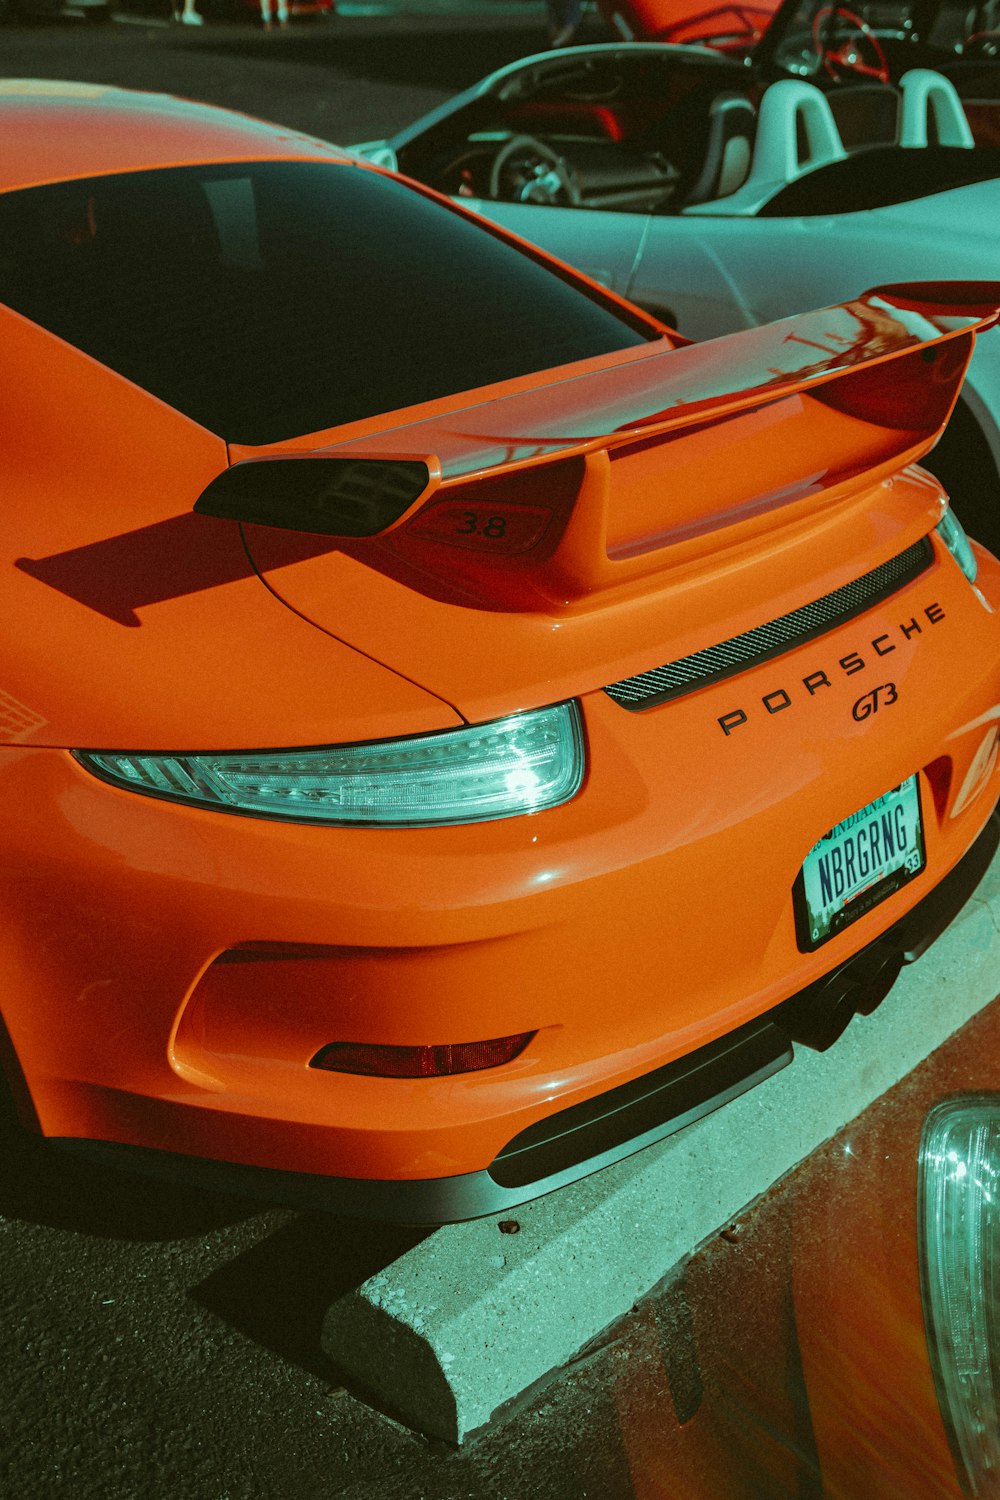 Un Porsche coupé deportivo naranja aparcado cerca de un coche descapotable blanco